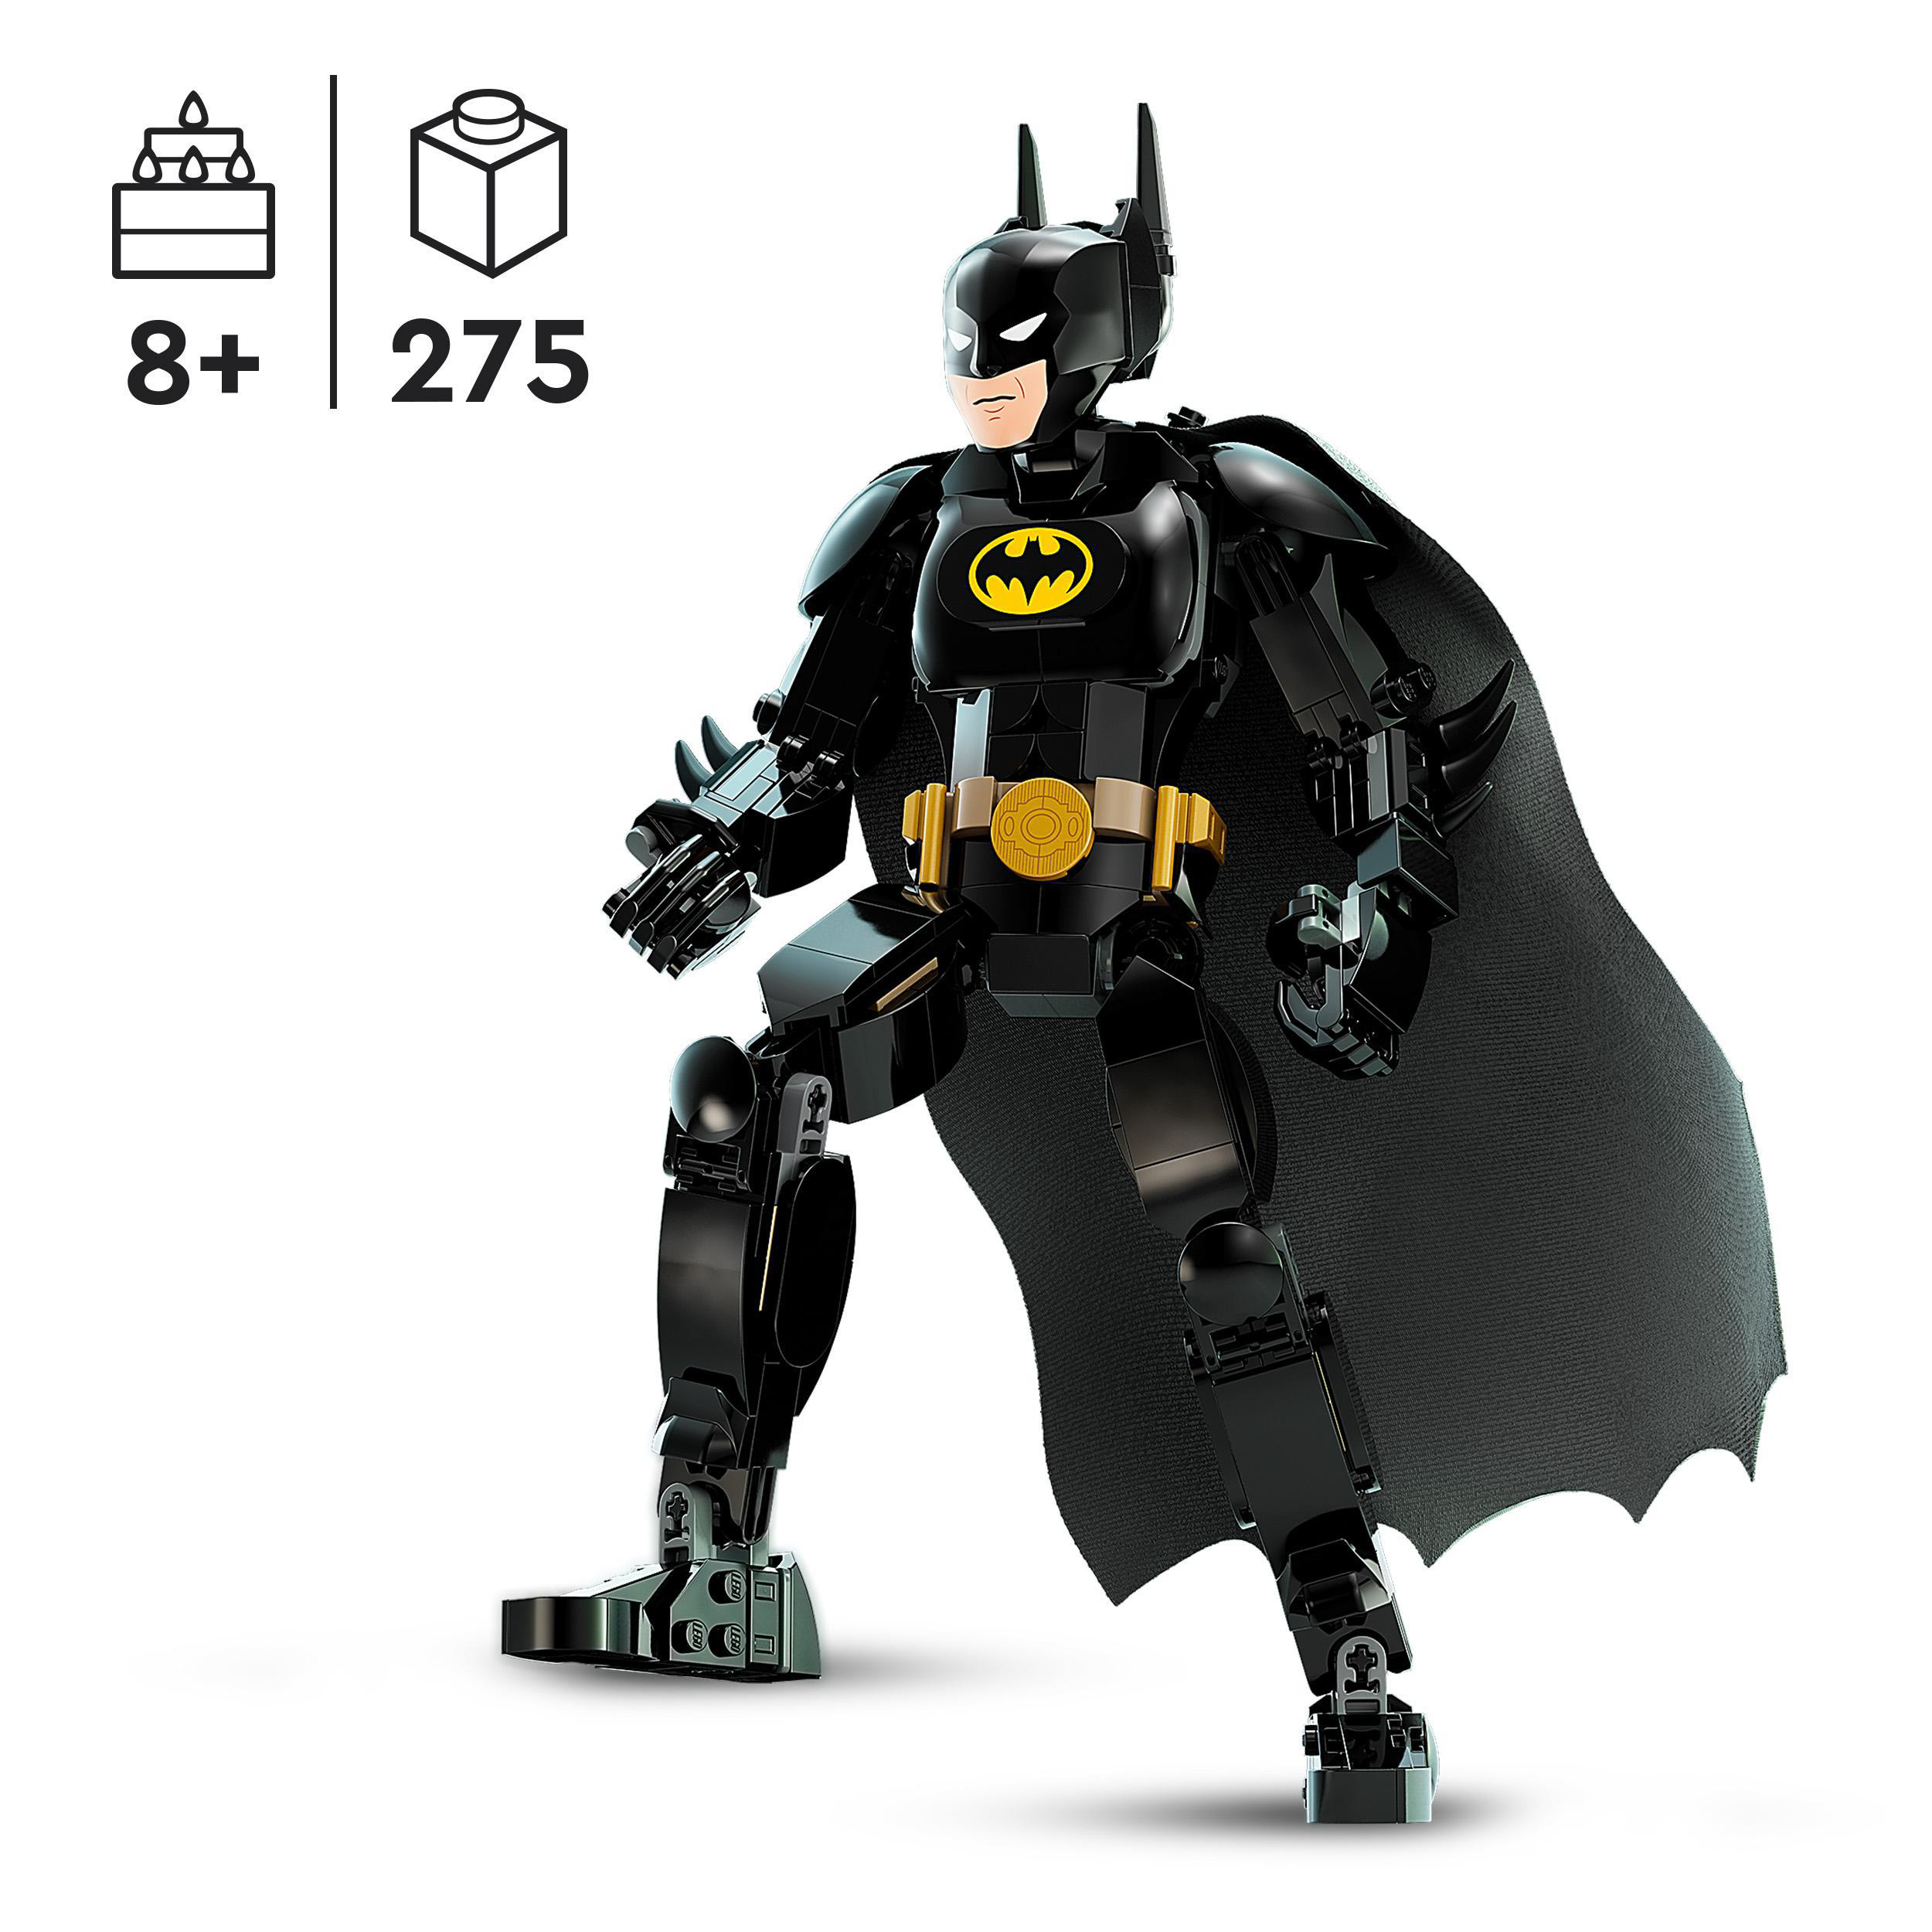 DC LEGO 76259 Bausatz, Mehrfarbig Batman Baufigur